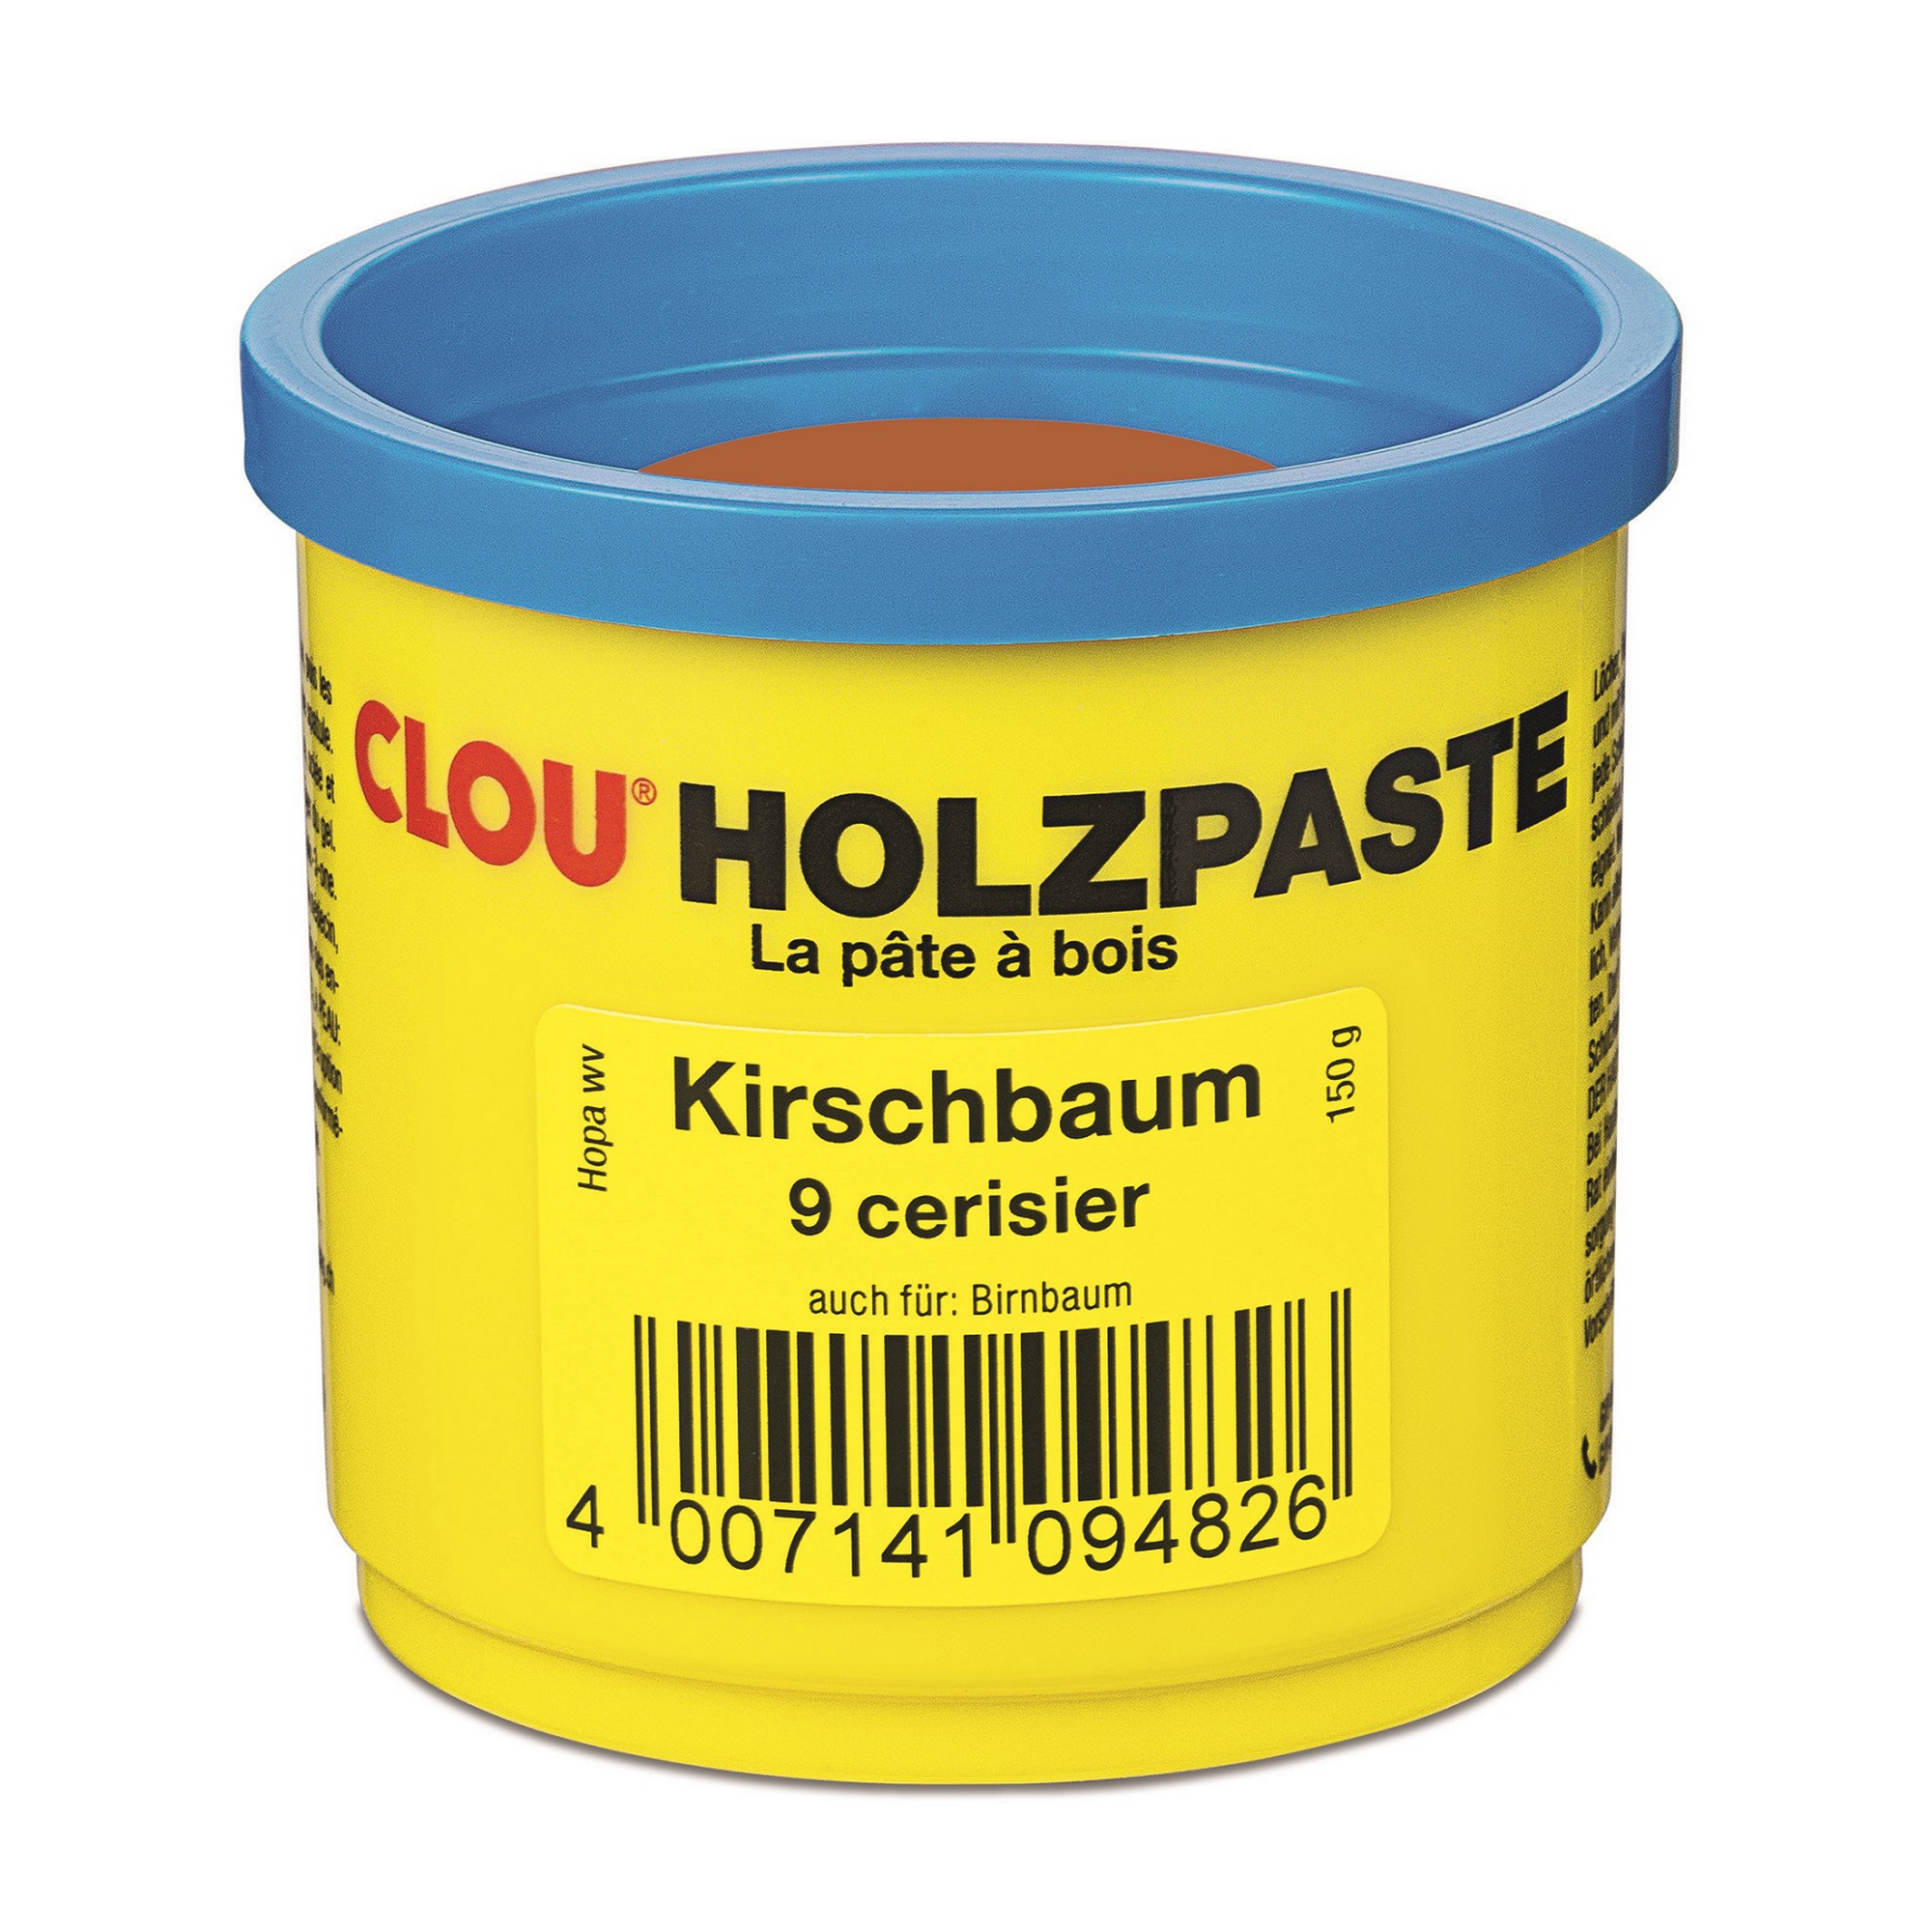 Holzpaste kirschbaumfarben 150 g + product picture